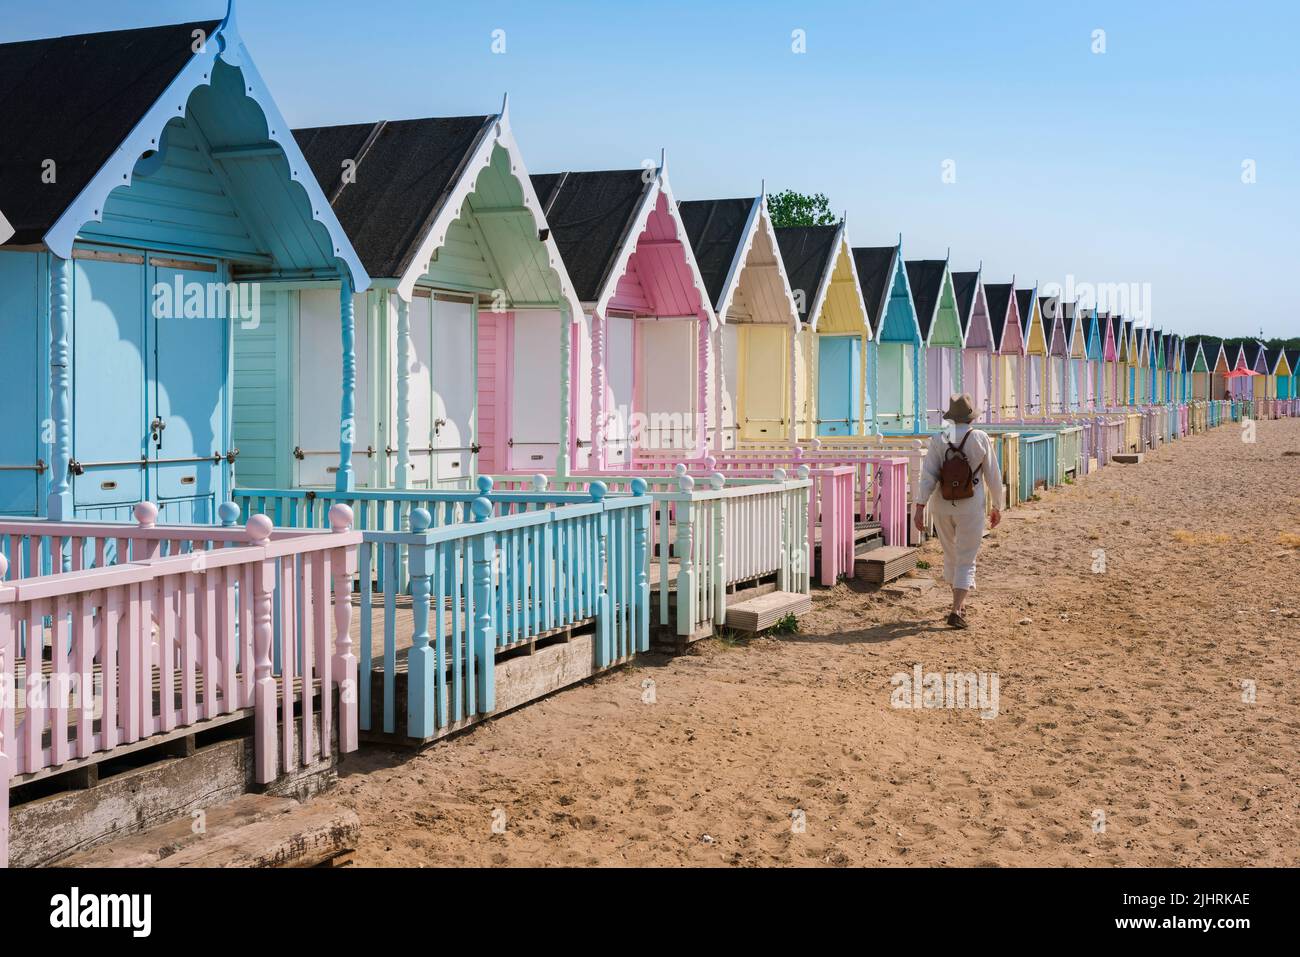 Donna femmina vacanza vacanza da solo, vista in estate di una sola donna viaggiatore a piedi attraverso colorate capanne sulla spiaggia di sabbia, Inghilterra, Regno Unito Foto Stock